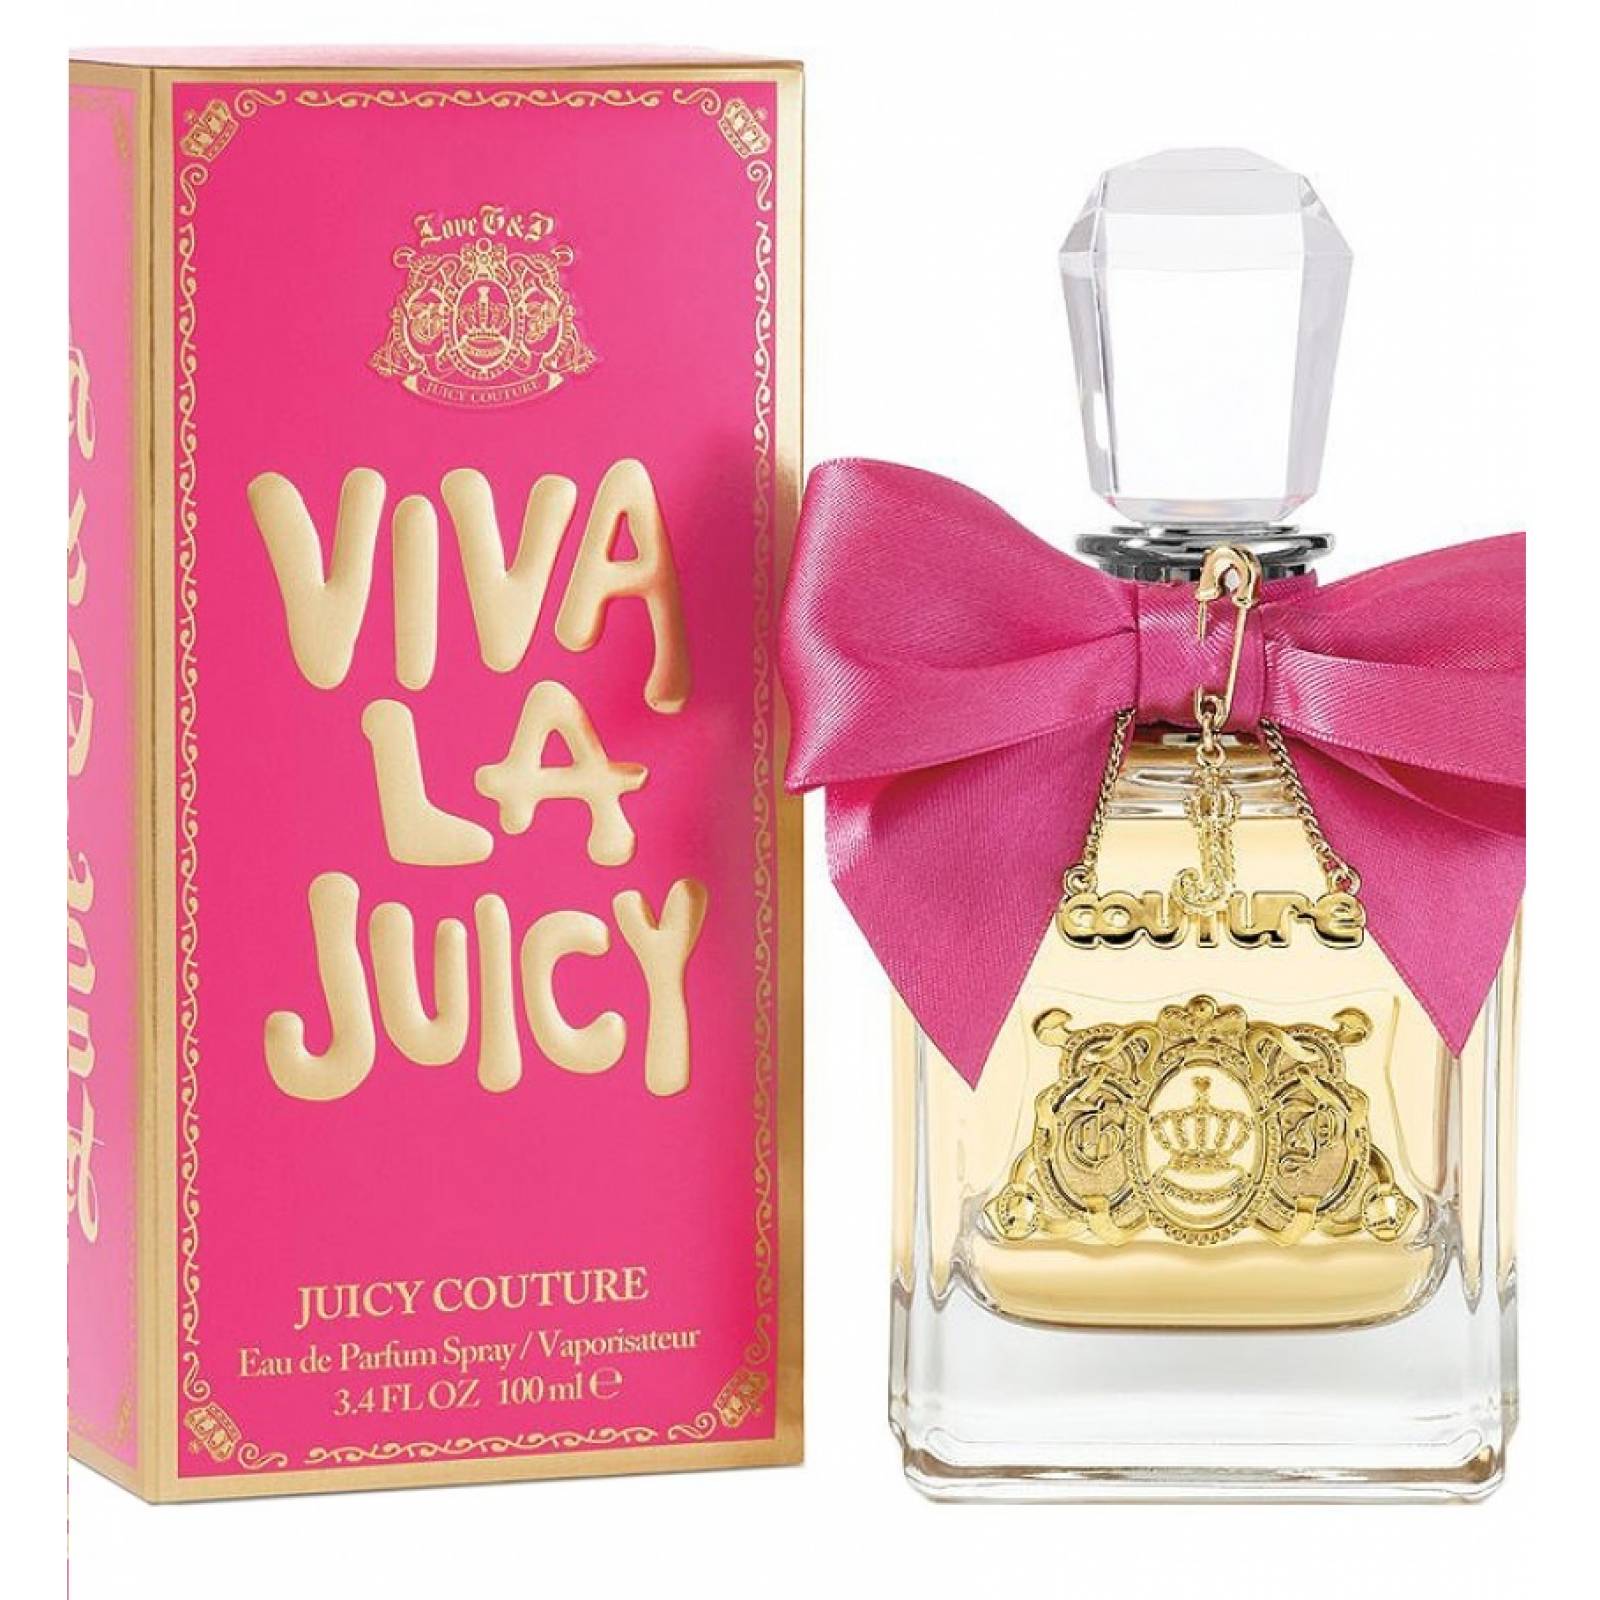 Viva La Juicy 100 ml Eau de Parfum Spray de Juicy Couture Fragancia para Dama